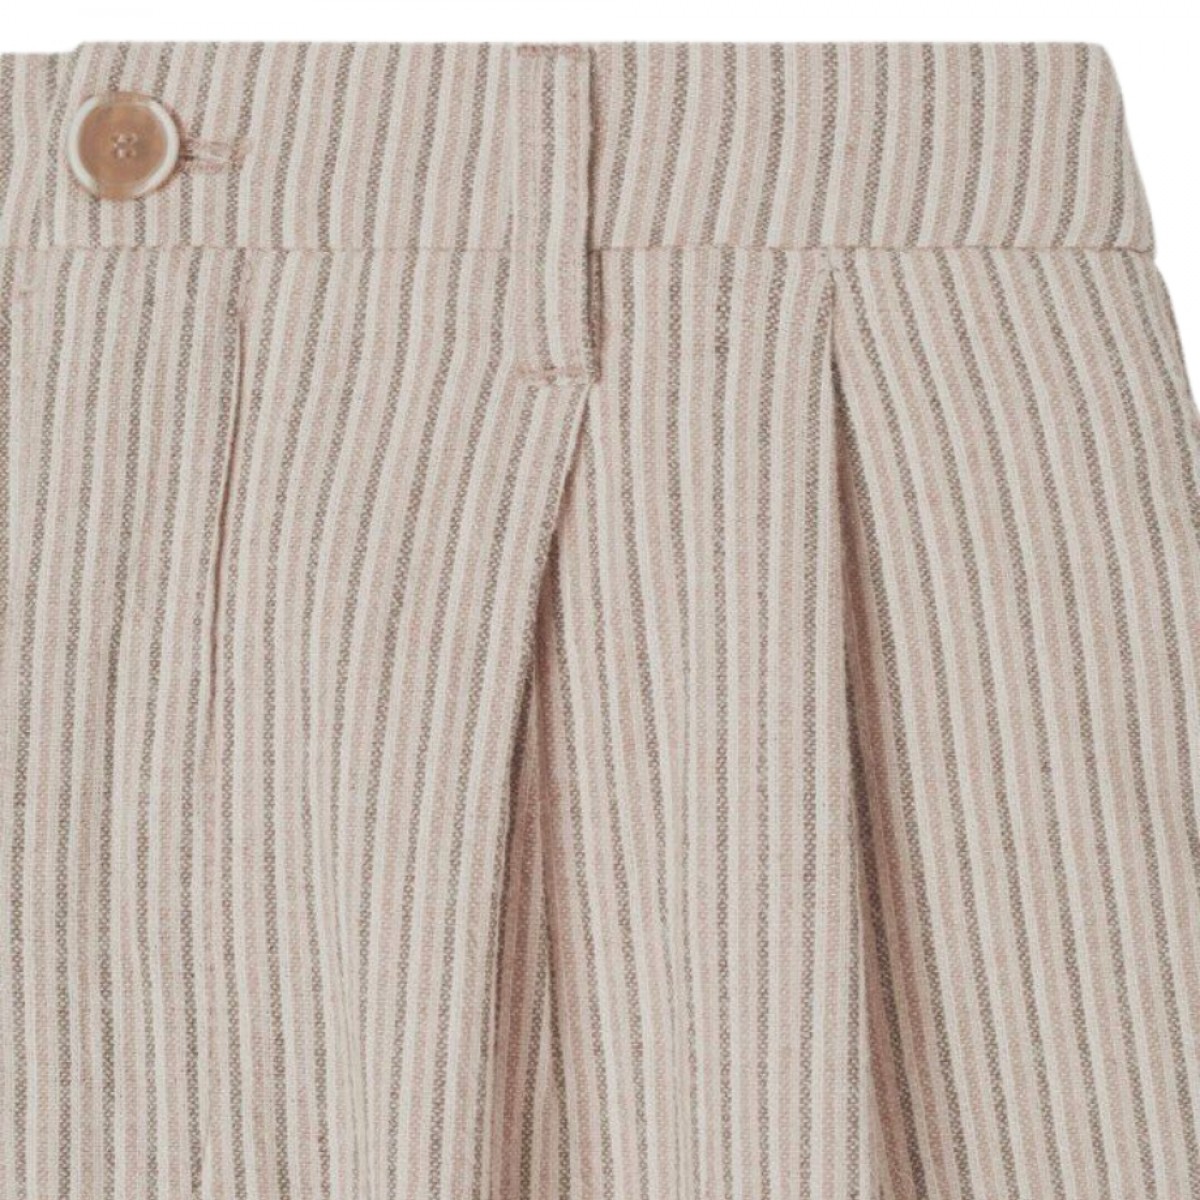 kybood shorts - beige stripes - læg